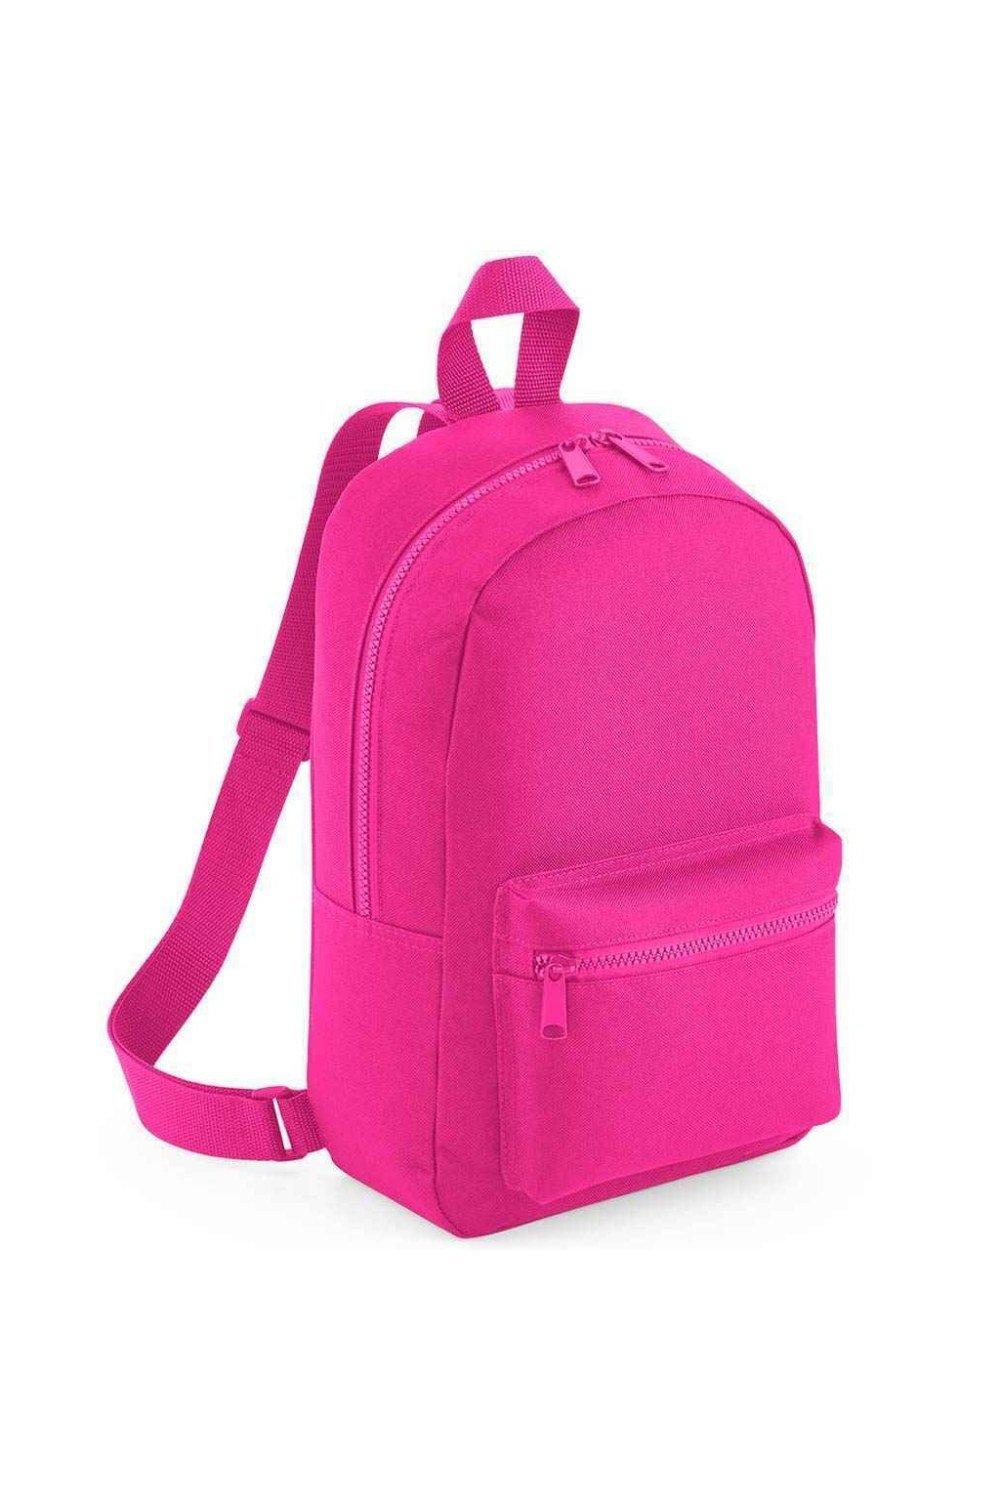 Мини-рюкзак Essential Fashion Bagbase, розовый чехол mypads genesis дженезис 1 мужской для umidigi bison 1 задняя панель накладка бампер